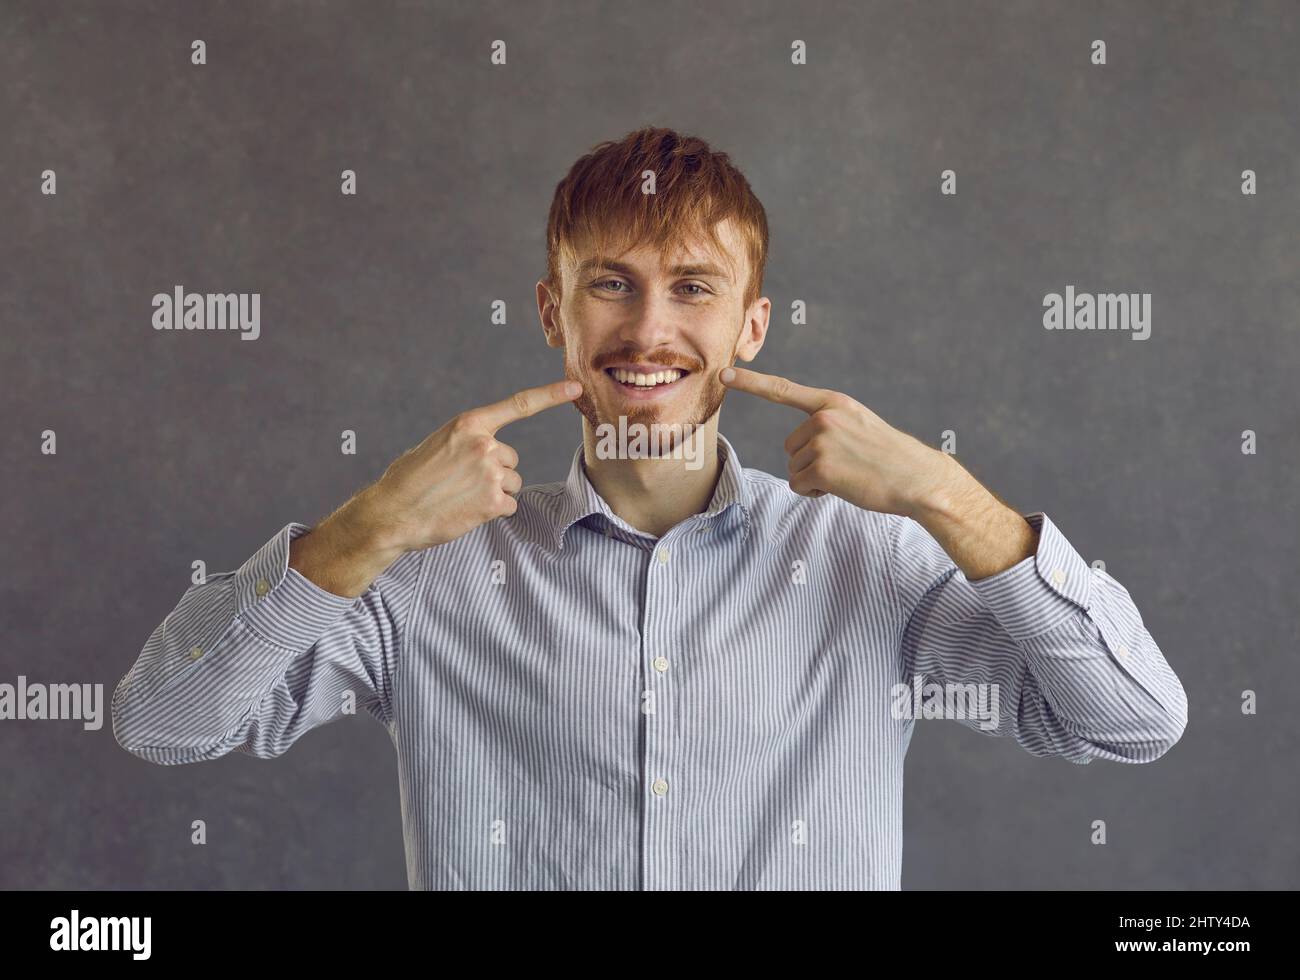 Jeune homme portant une chemise décontractée montrant des dents blanches sur fond gris Banque D'Images